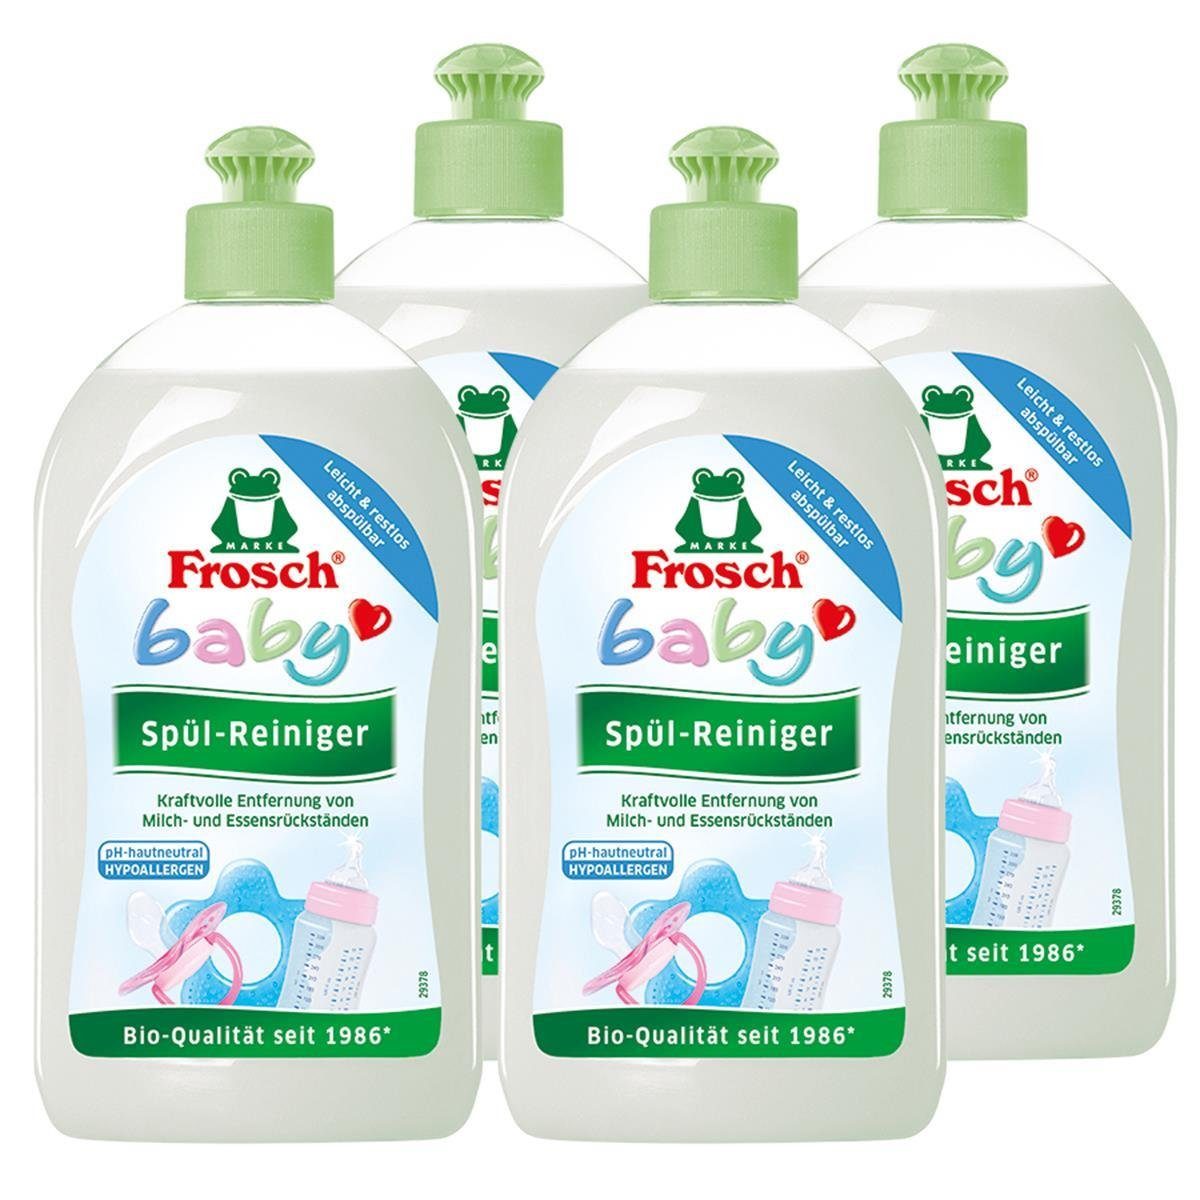 FROSCH 4x Frosch Baby Spül-Reiniger 500 ml Geschirrspülmittel